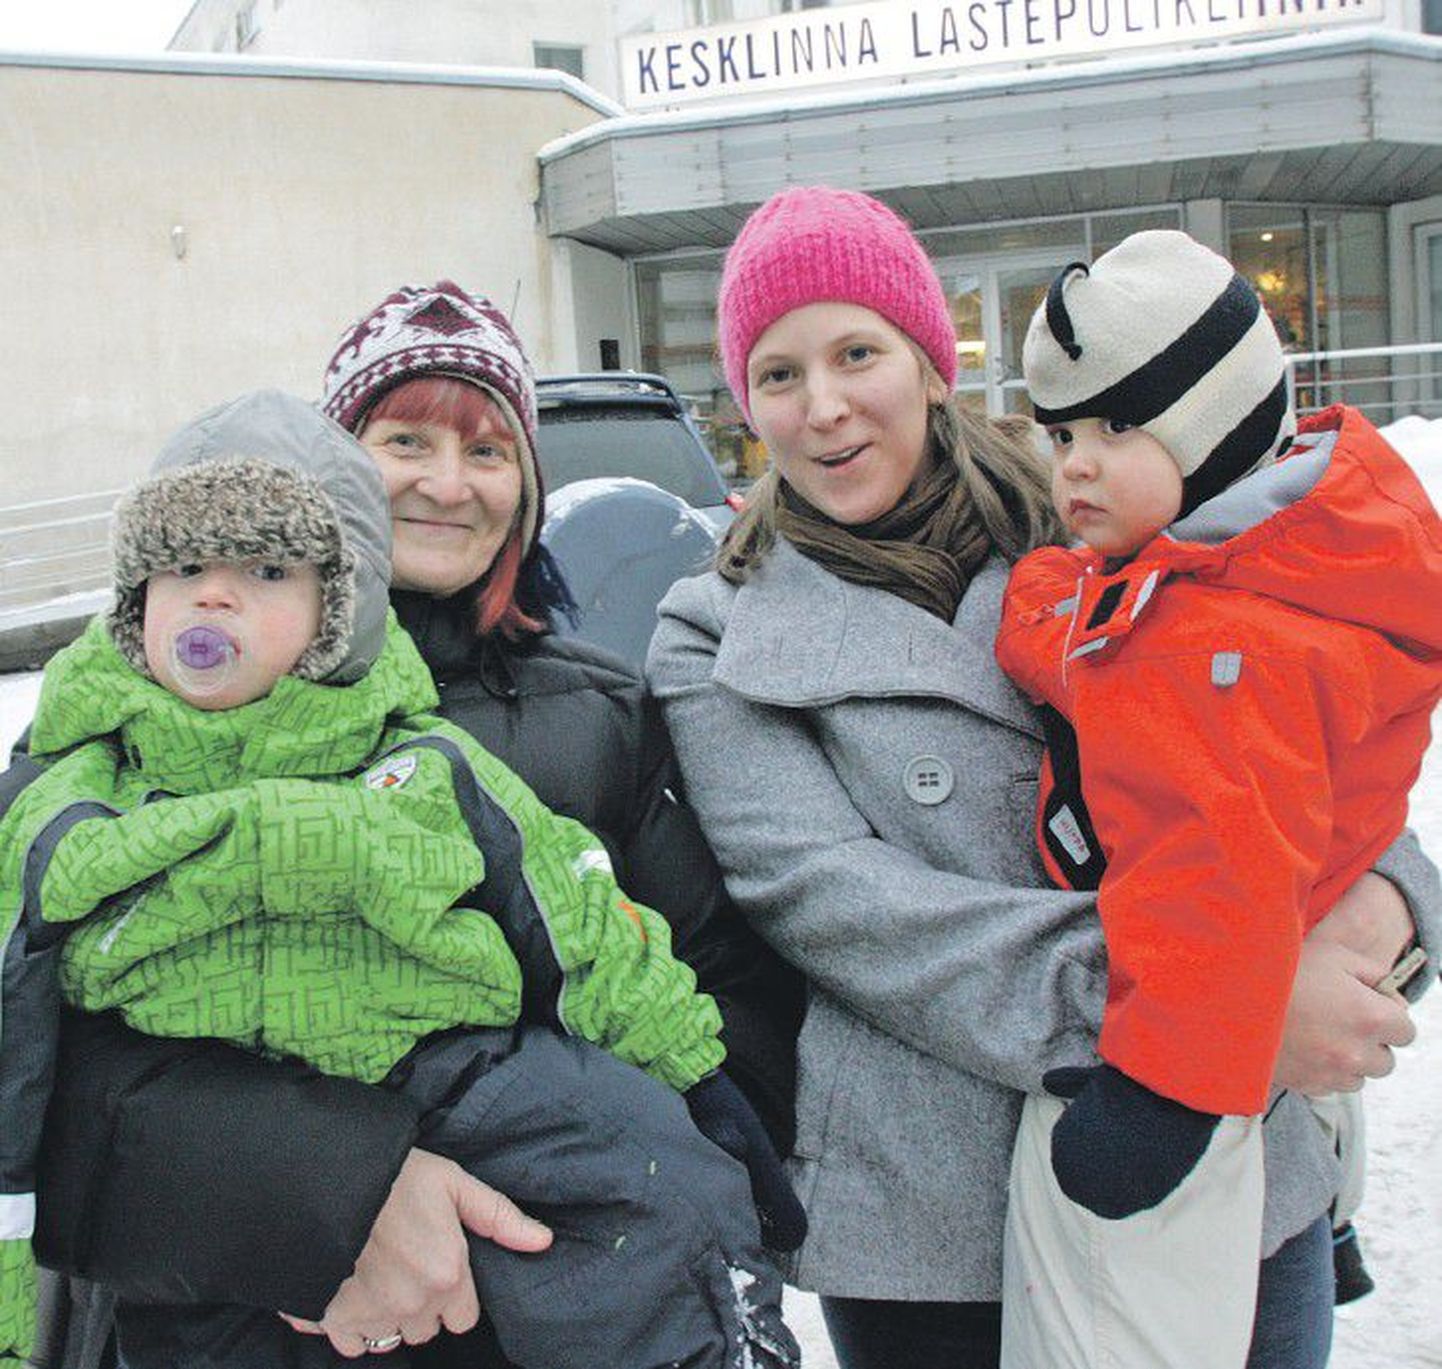 Проживающая в сельской местности мать пятерых детей Вирге Раазик недовольна своими местными сельскими врачами и привозит детей на врачебный прием в Таллинн. Со своими двойняшками Кярди и Керди, а также их бабушкой Хельги Раазик женщина приехала в таллиннскую Кесклиннаскую детскую поликлинику.